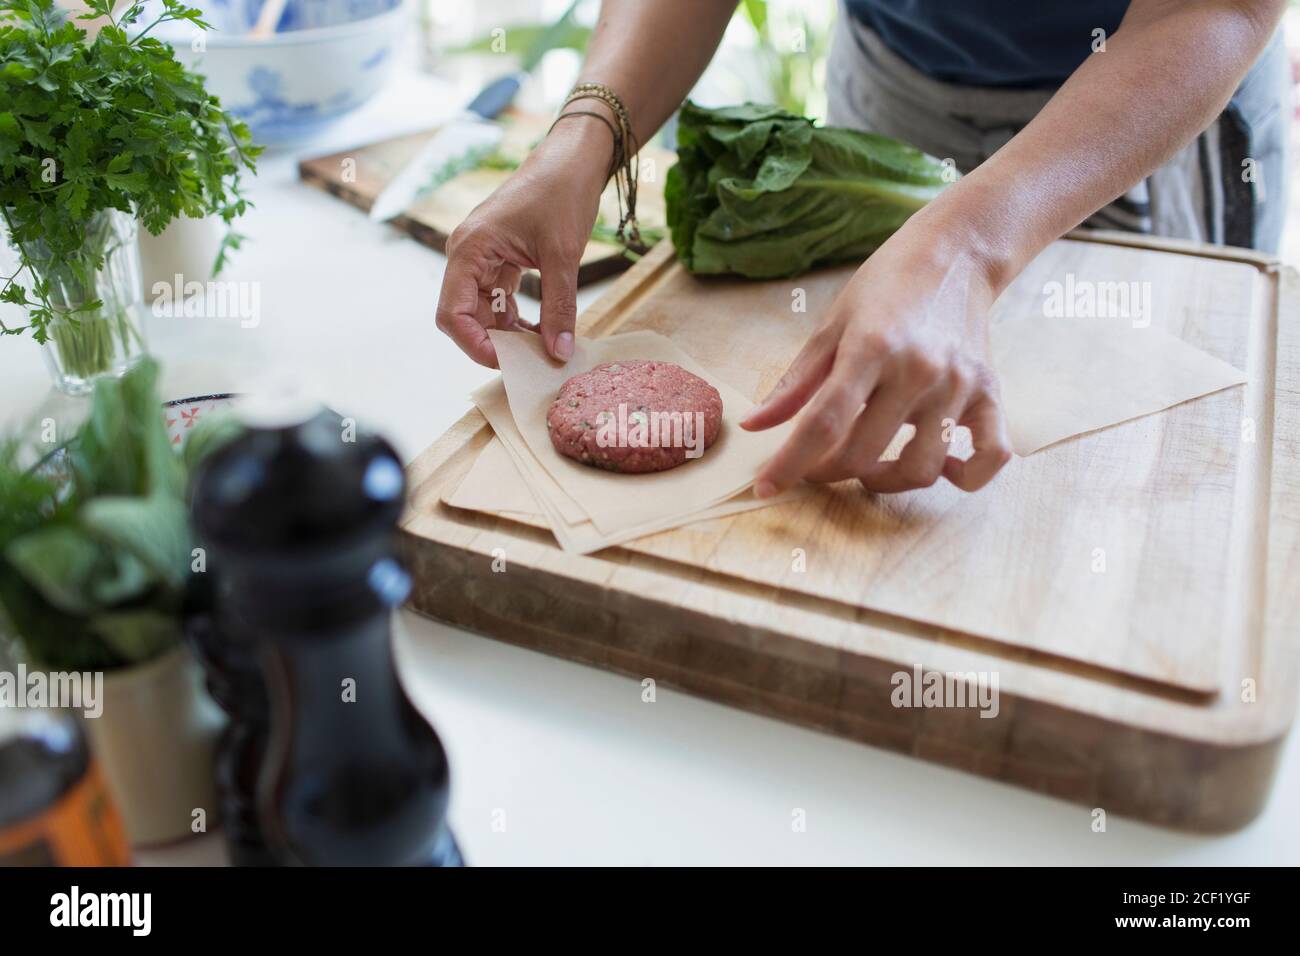 Woman making fresh hamburger patties on cutting board Stock Photo